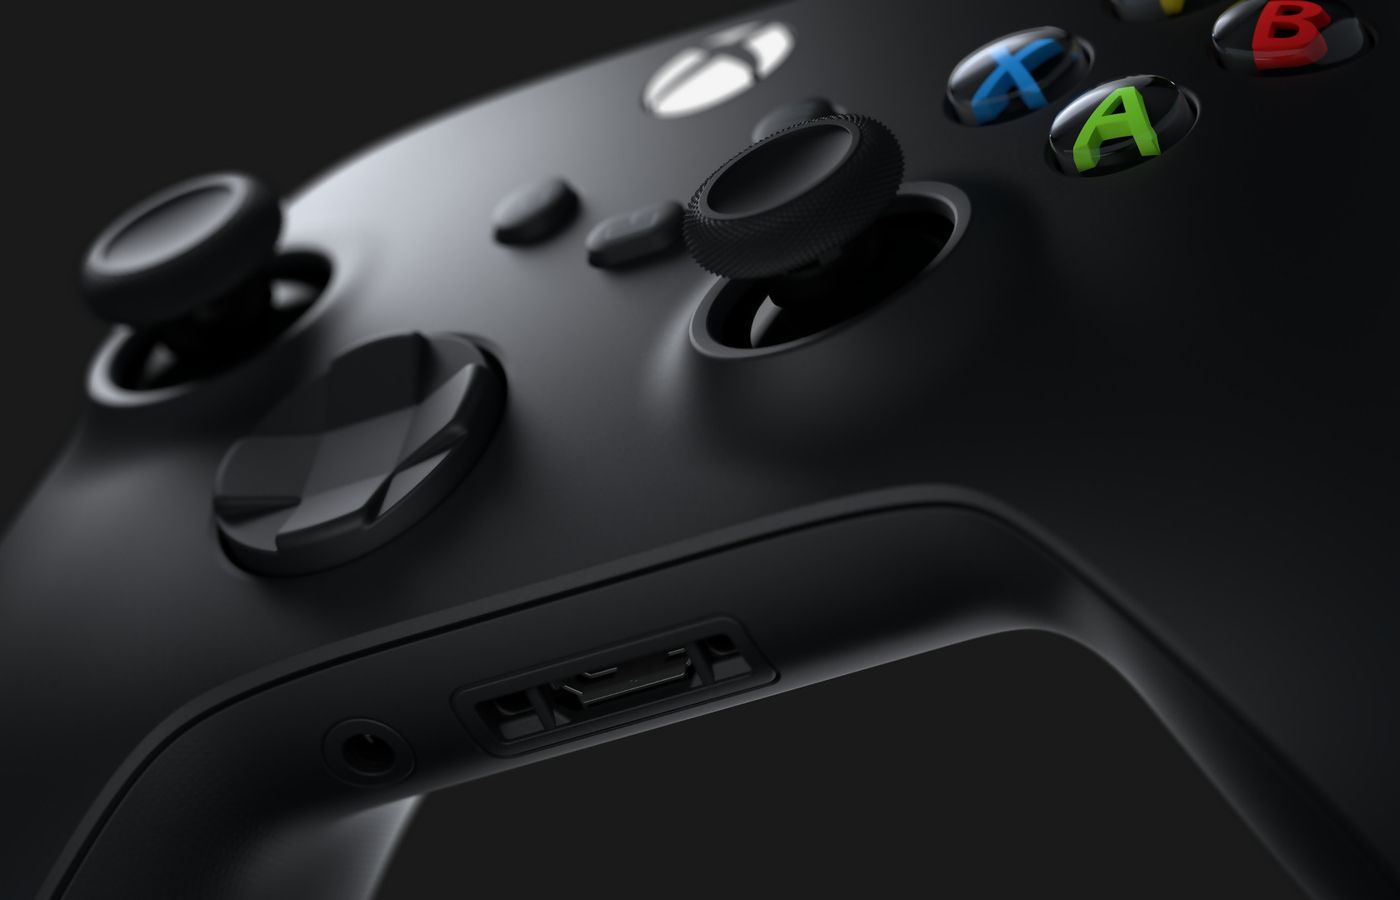 Les manettes Xbox continueraient d'utiliser des piles à cause d'un partenariat liant Microsoft à Duracell